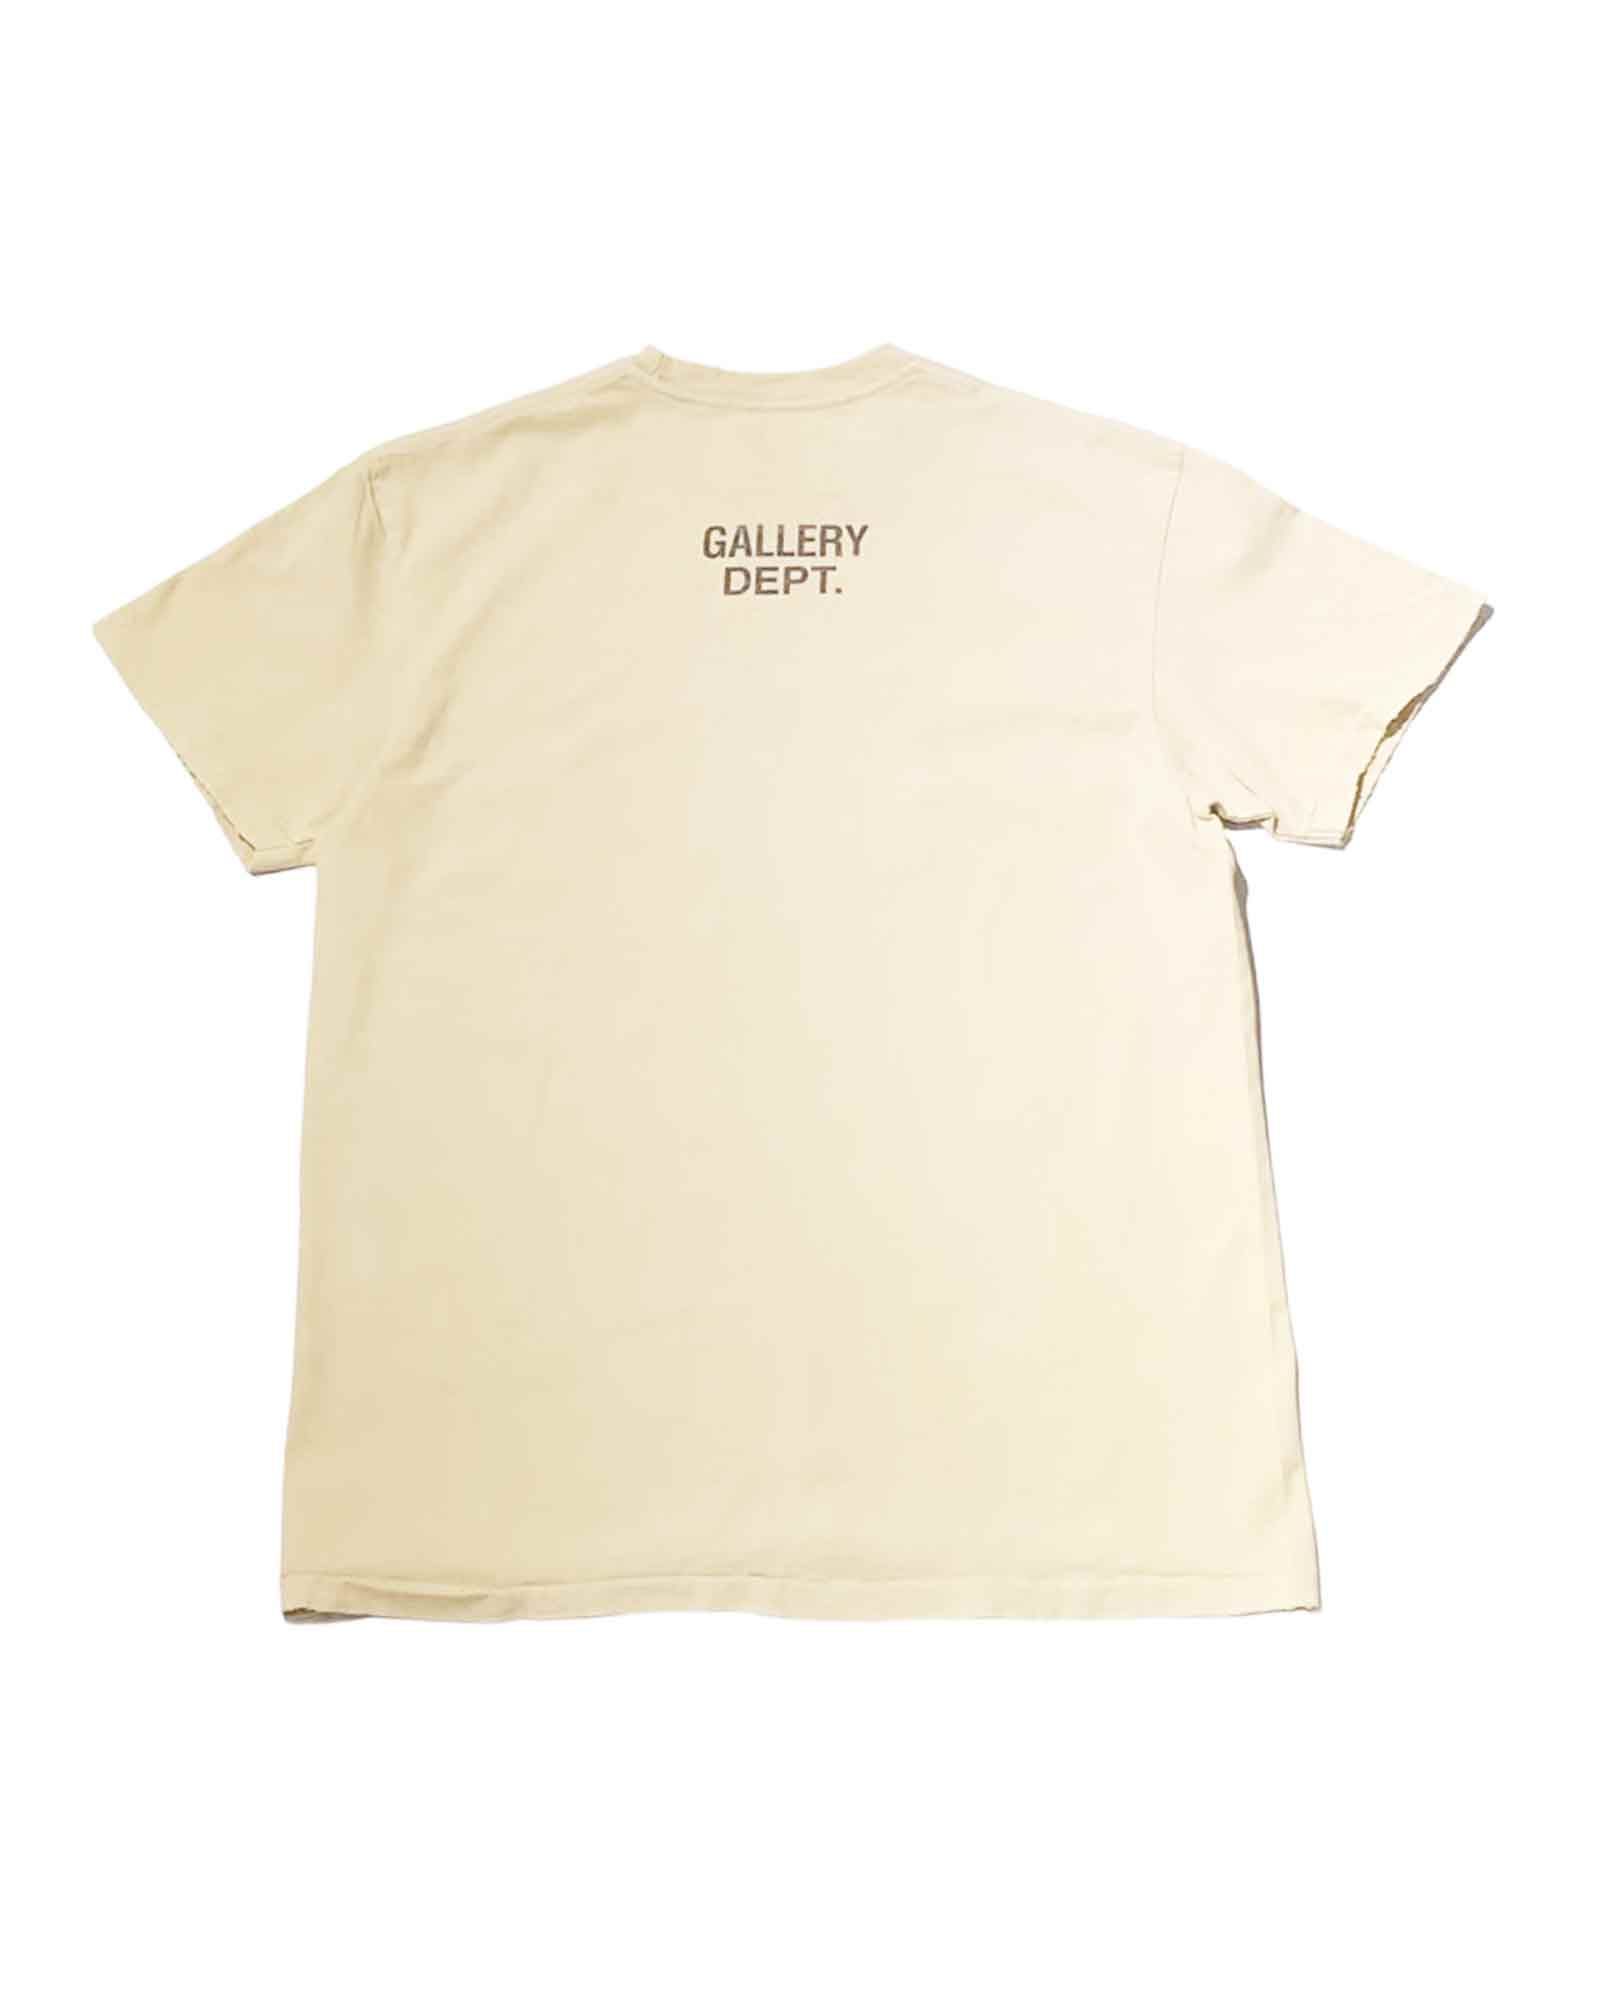 GALLERY DEPT. - ギャラリーデプト/WORK IN PROGRESS TEE/Tシャツ 